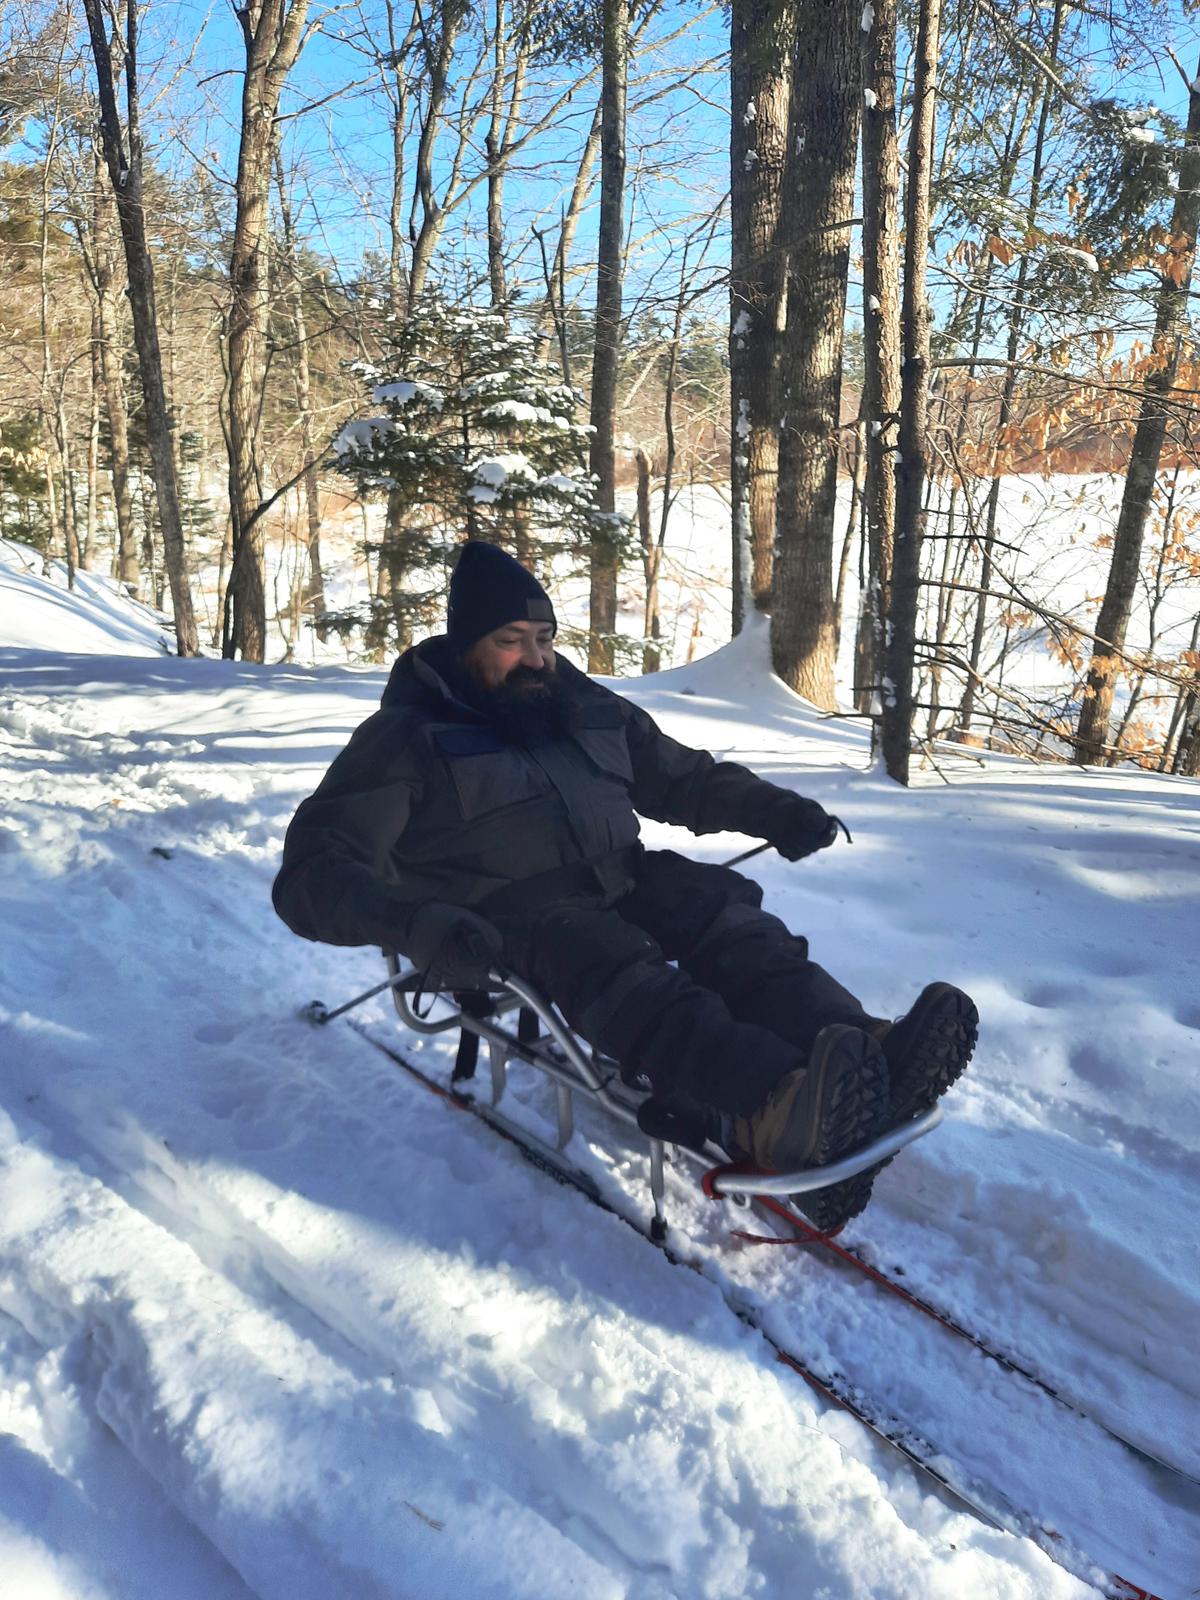 Enock on his sit-ski. Photo credit: Enock Glidden